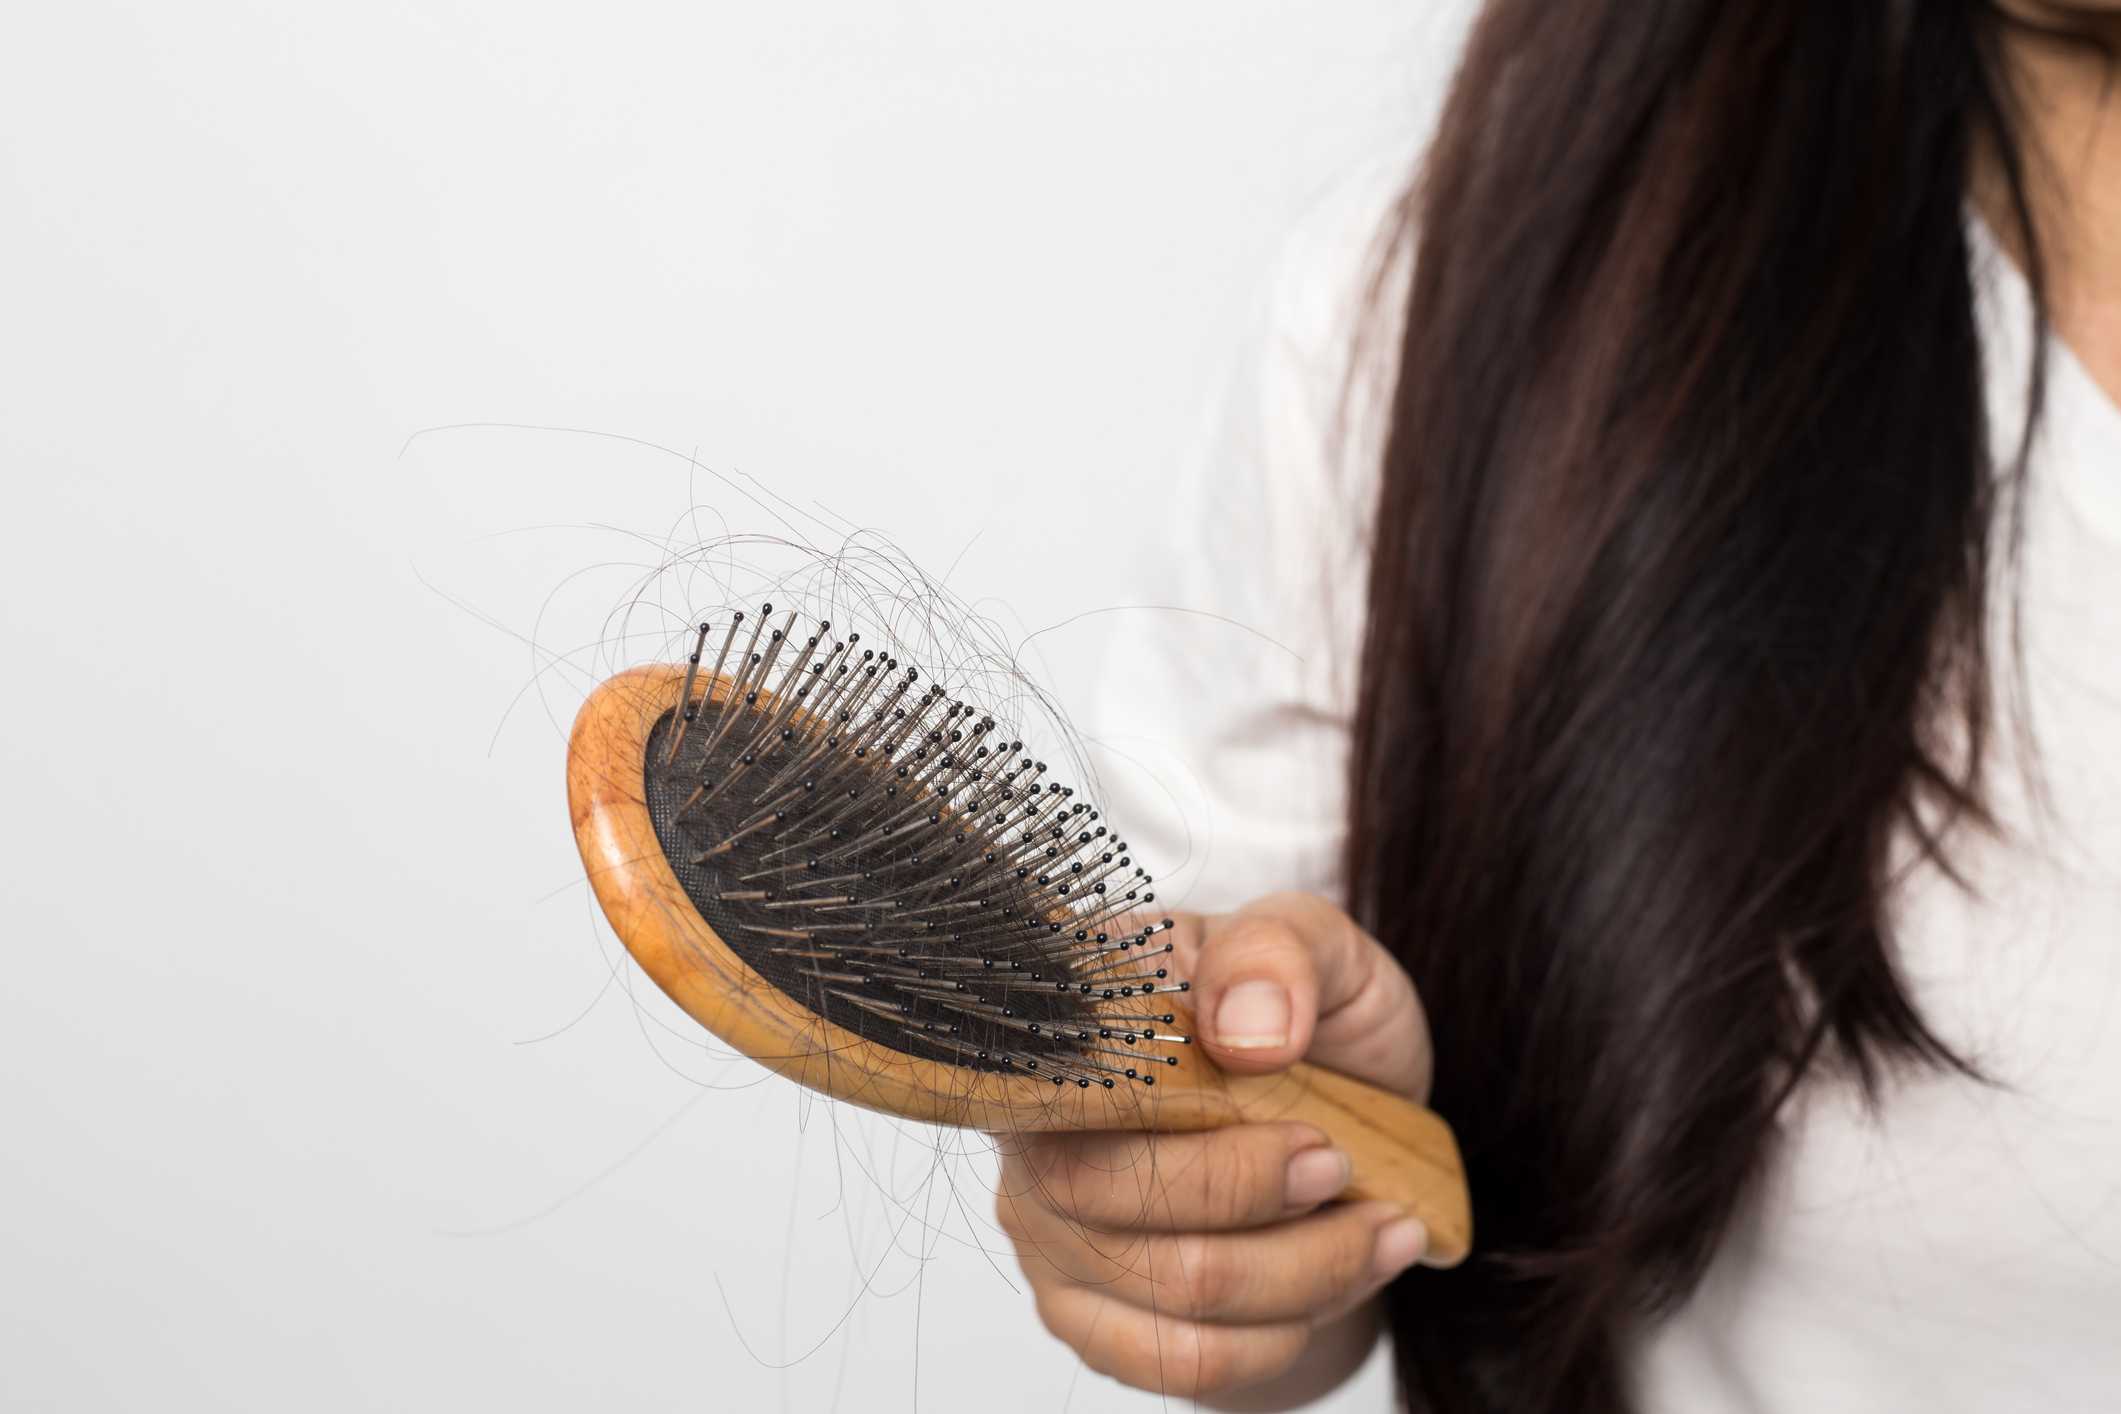 8 лучших рецептов масок для волос в домашних условиях: от выпадения и роста волос